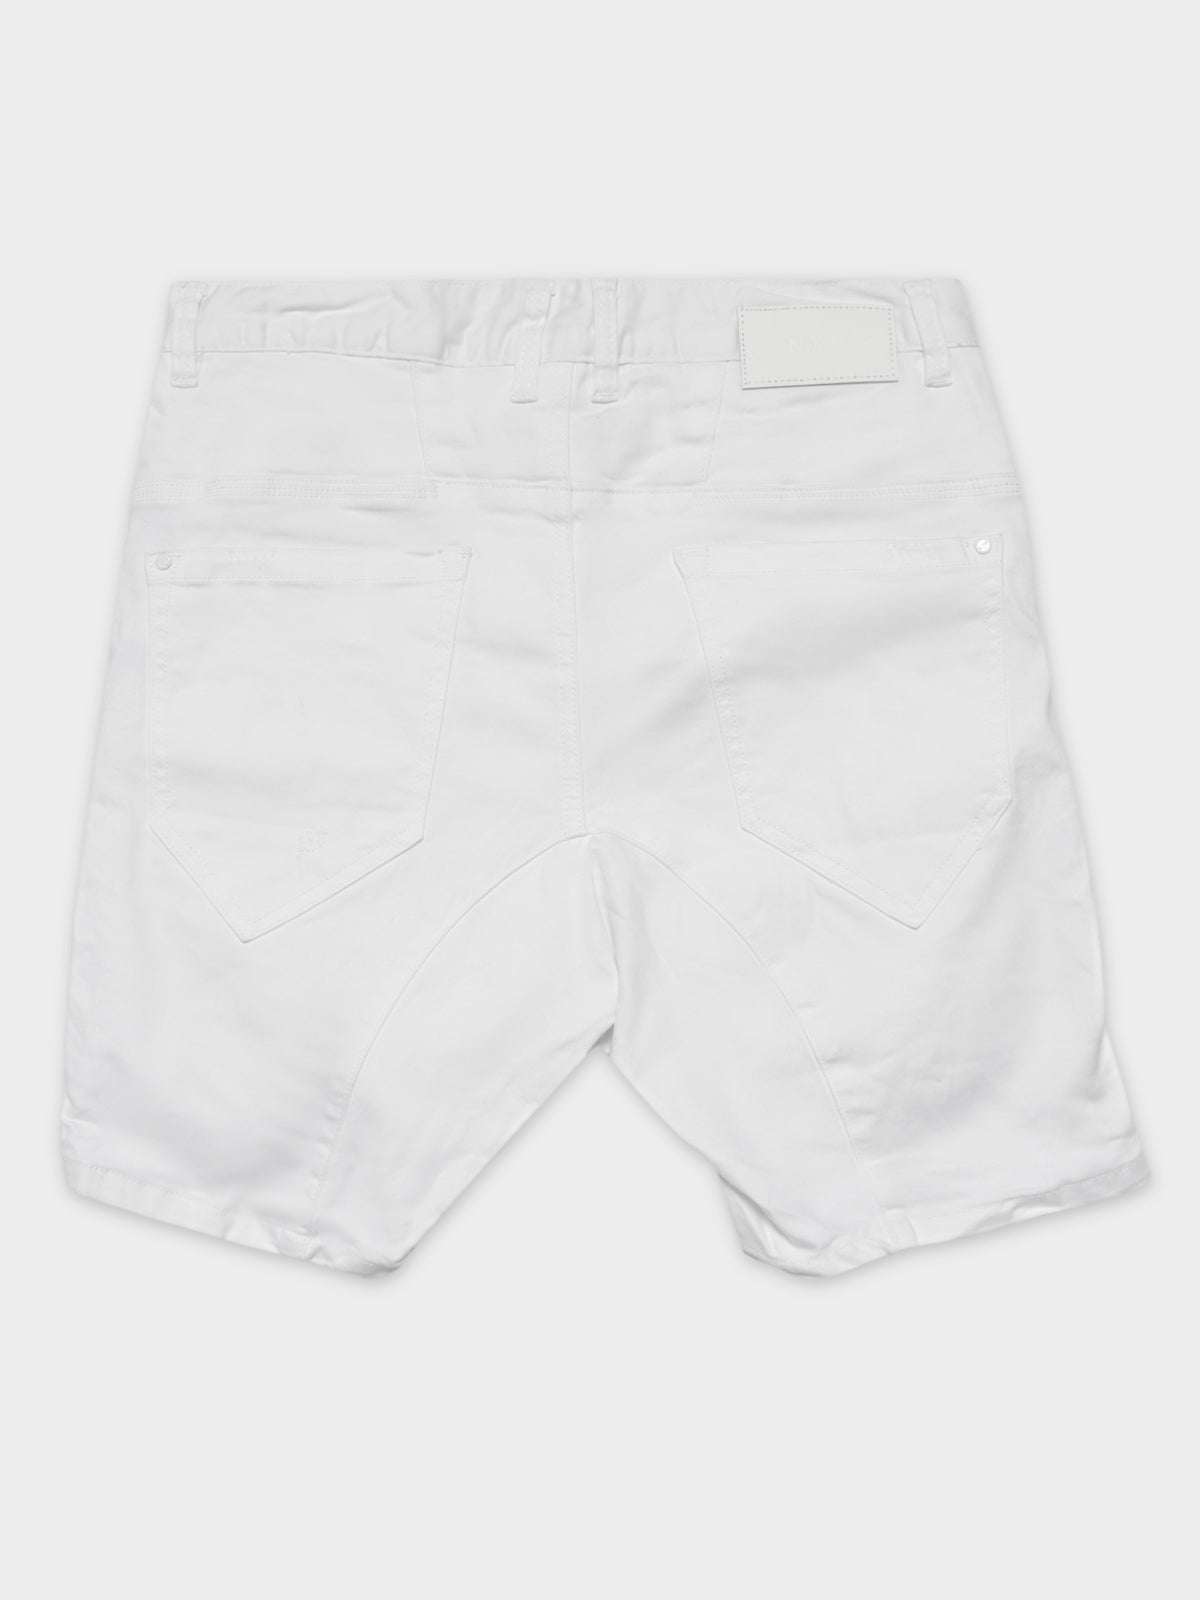 Destroyer Shorts in White Denim